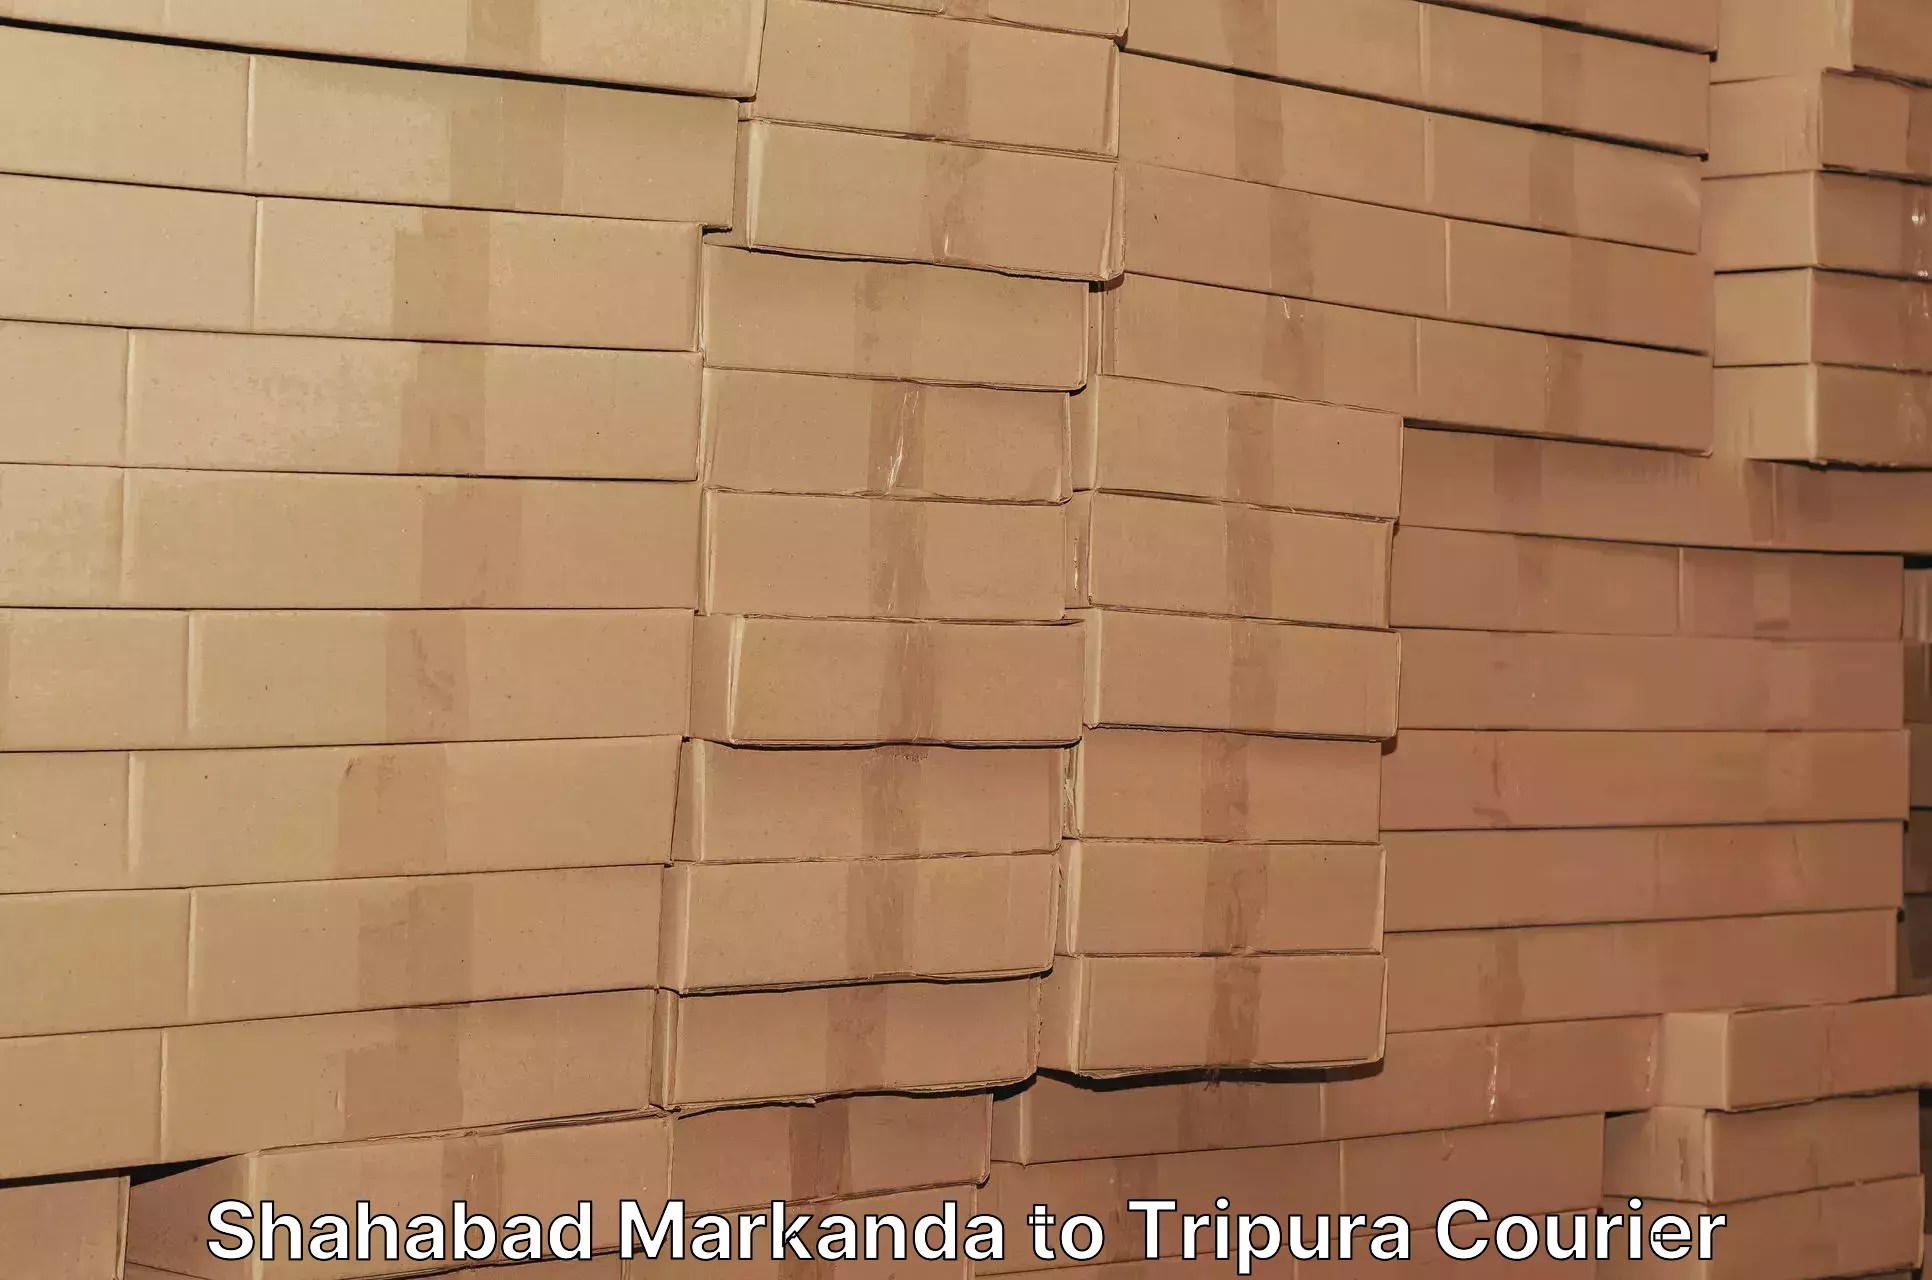 Efficient freight transportation Shahabad Markanda to Tripura